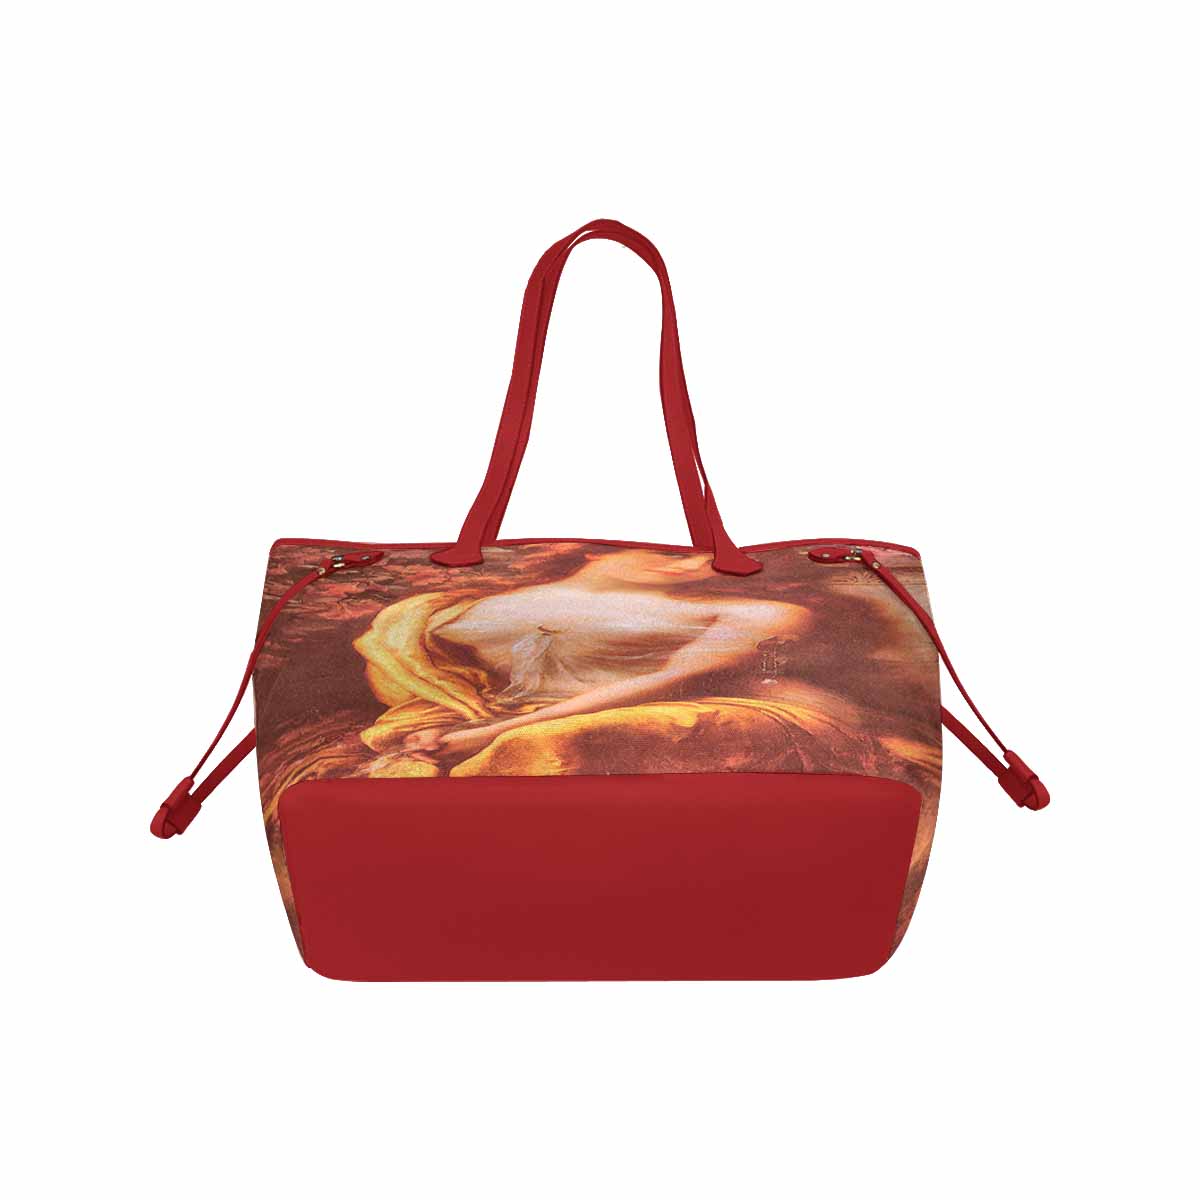 Victorian Lady Design Handbag, Model 1695361, Starlight, RED TRIM